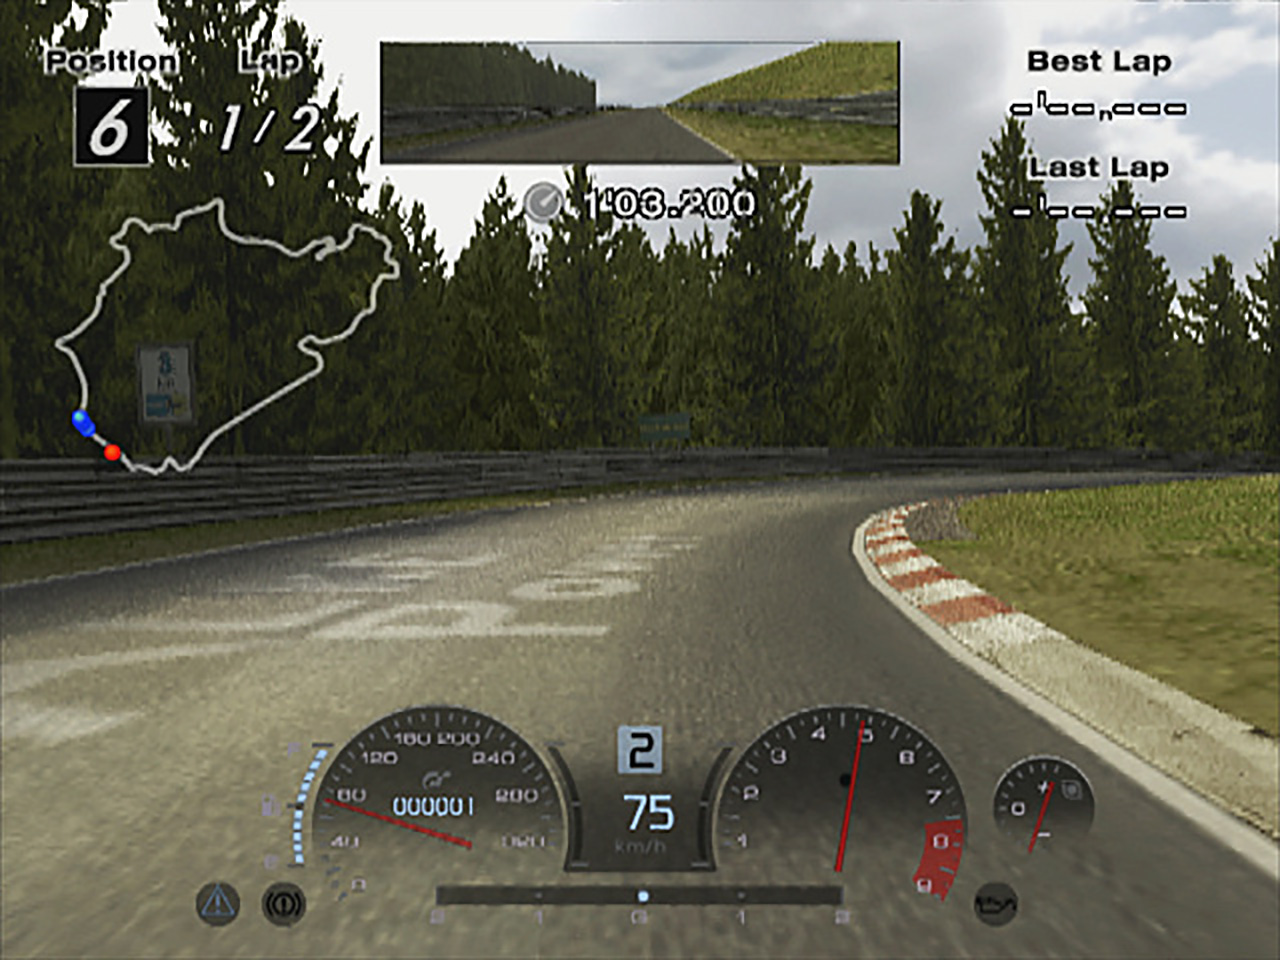 Cheats de Gran Turismo 4 são descobertos após quase 20 anos